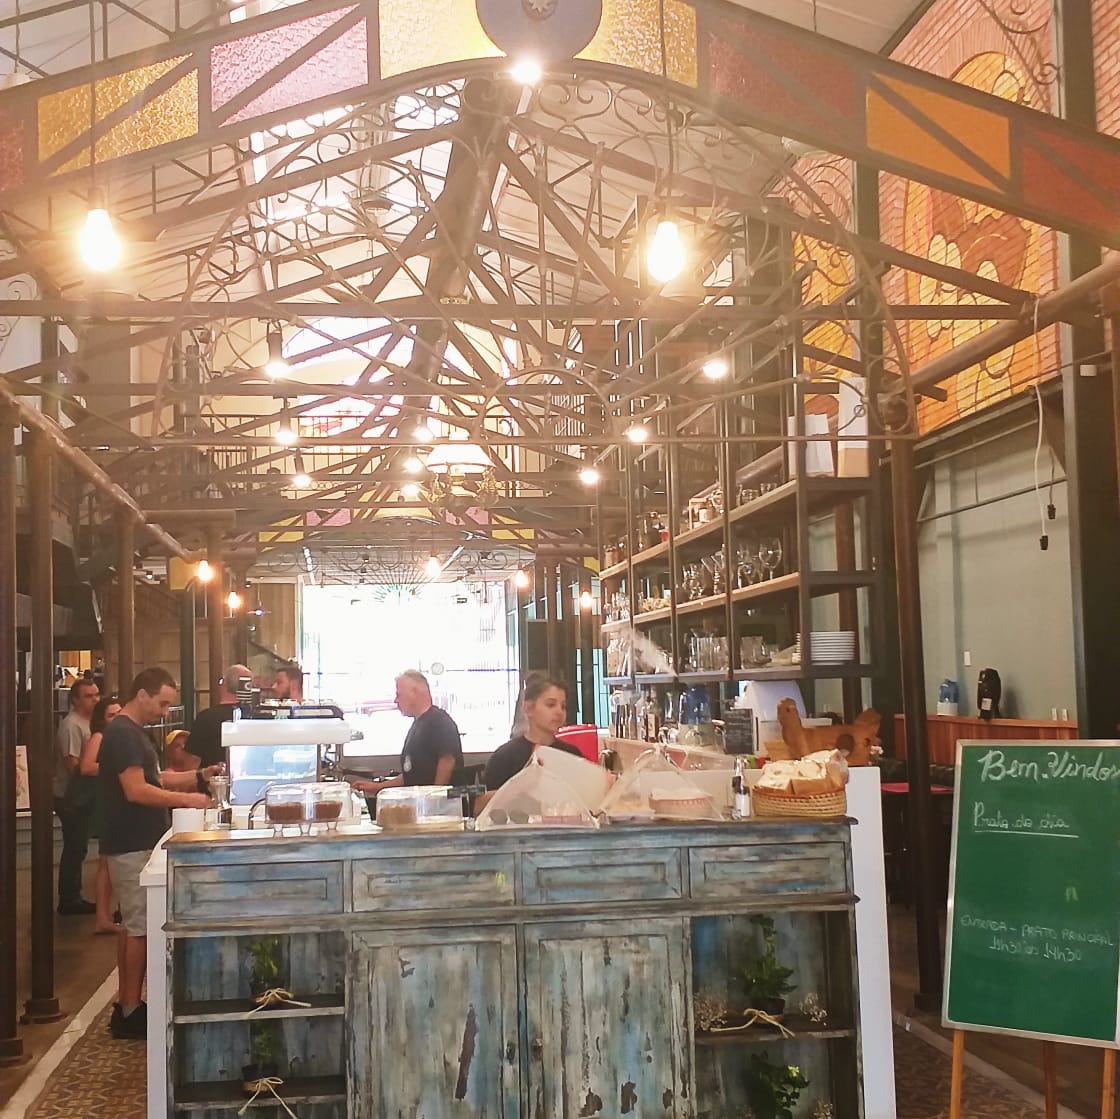 Mercado do Café